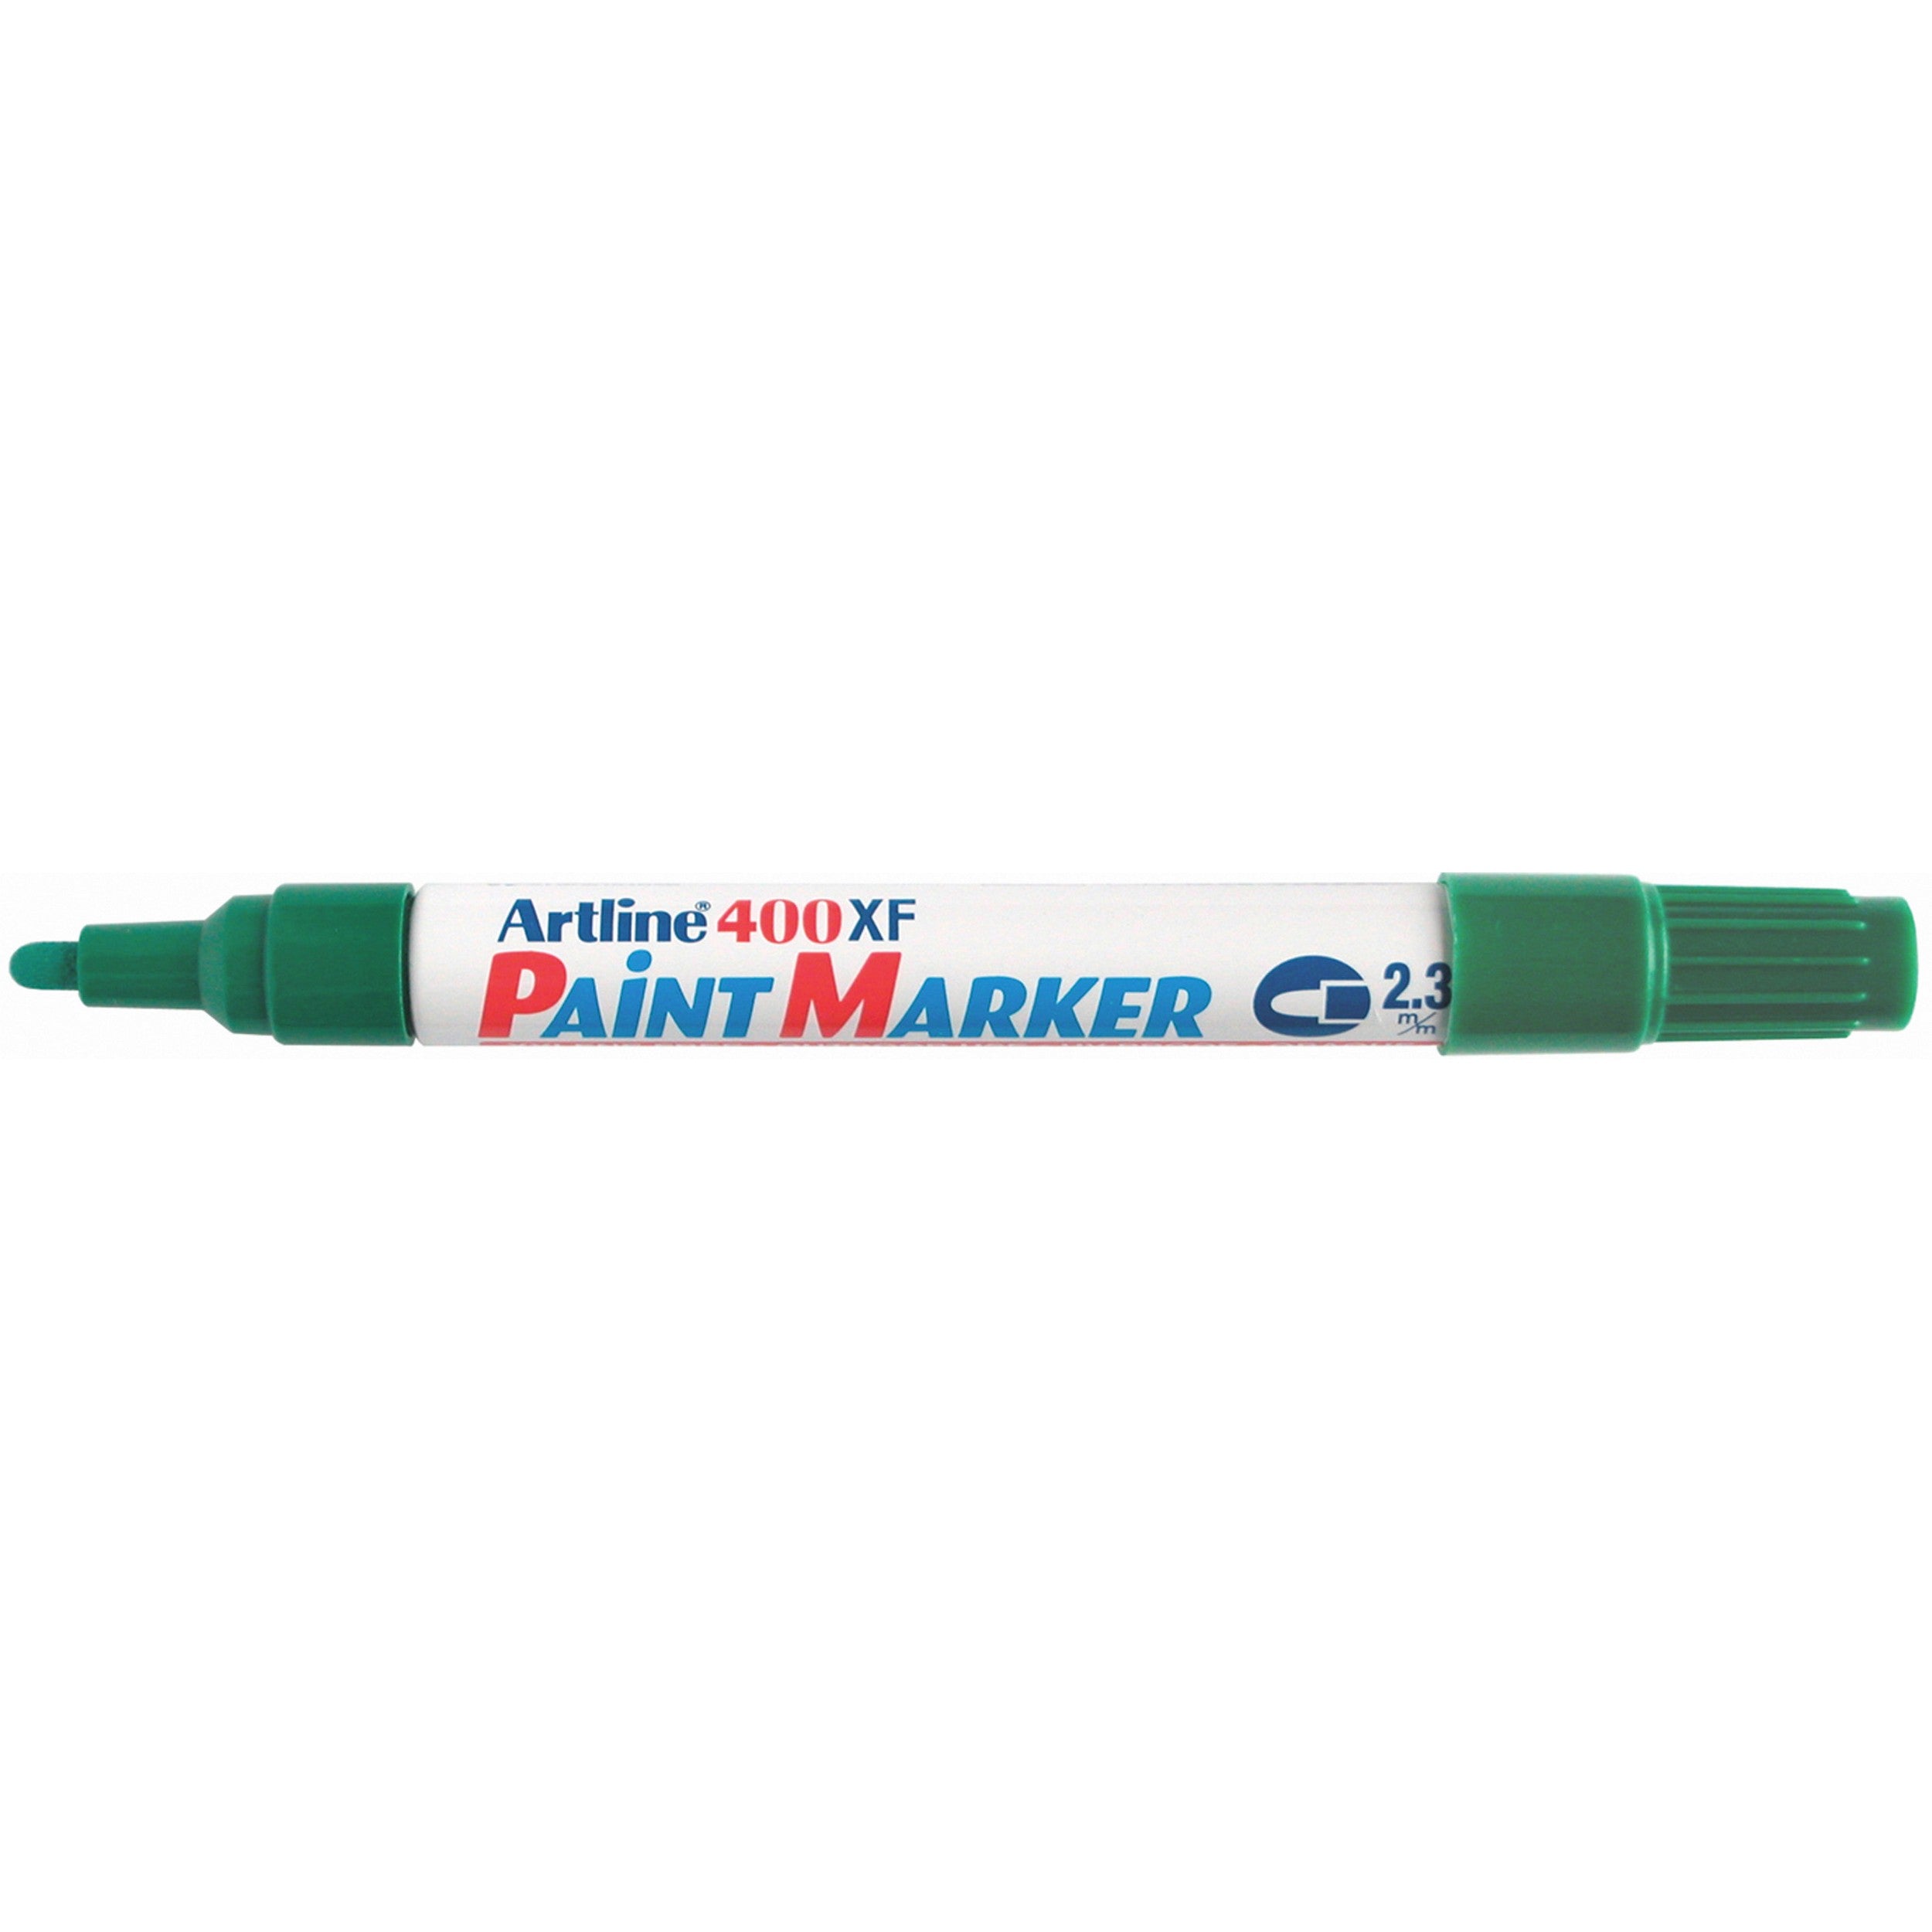 Artline Paint Marker 400XF, green, lid off